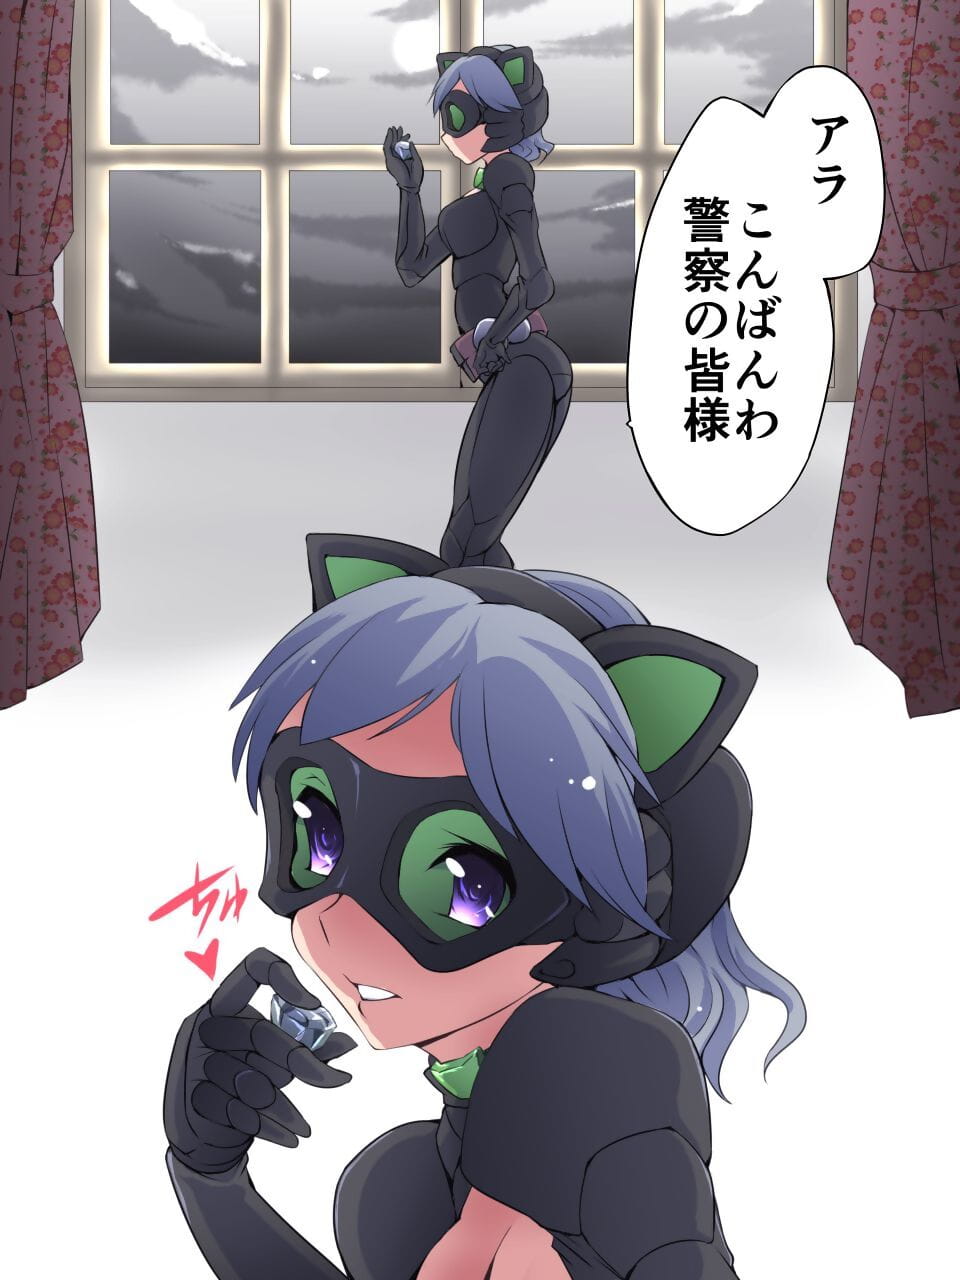 lạc Bạc con mèo manga cấm Dai nư page 1